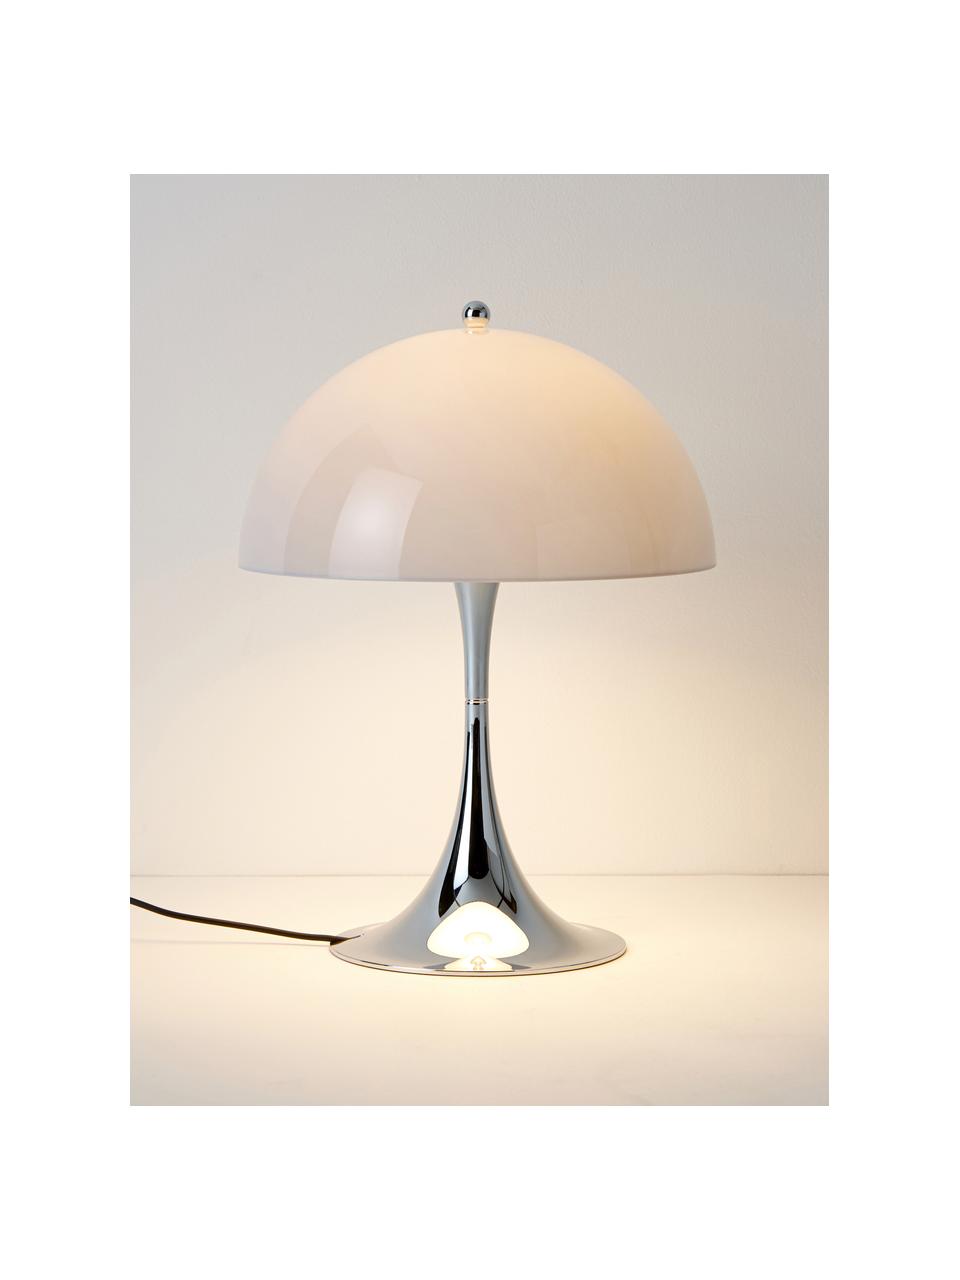 Lampa stołowa LED z funkcją przyciemniania Panthella, W 34 cm, Stelaż: aluminium powlekane, Jasnoniebieskie szkło akrylowe, odcienie srebrnego, Ø 25 x 34 cm